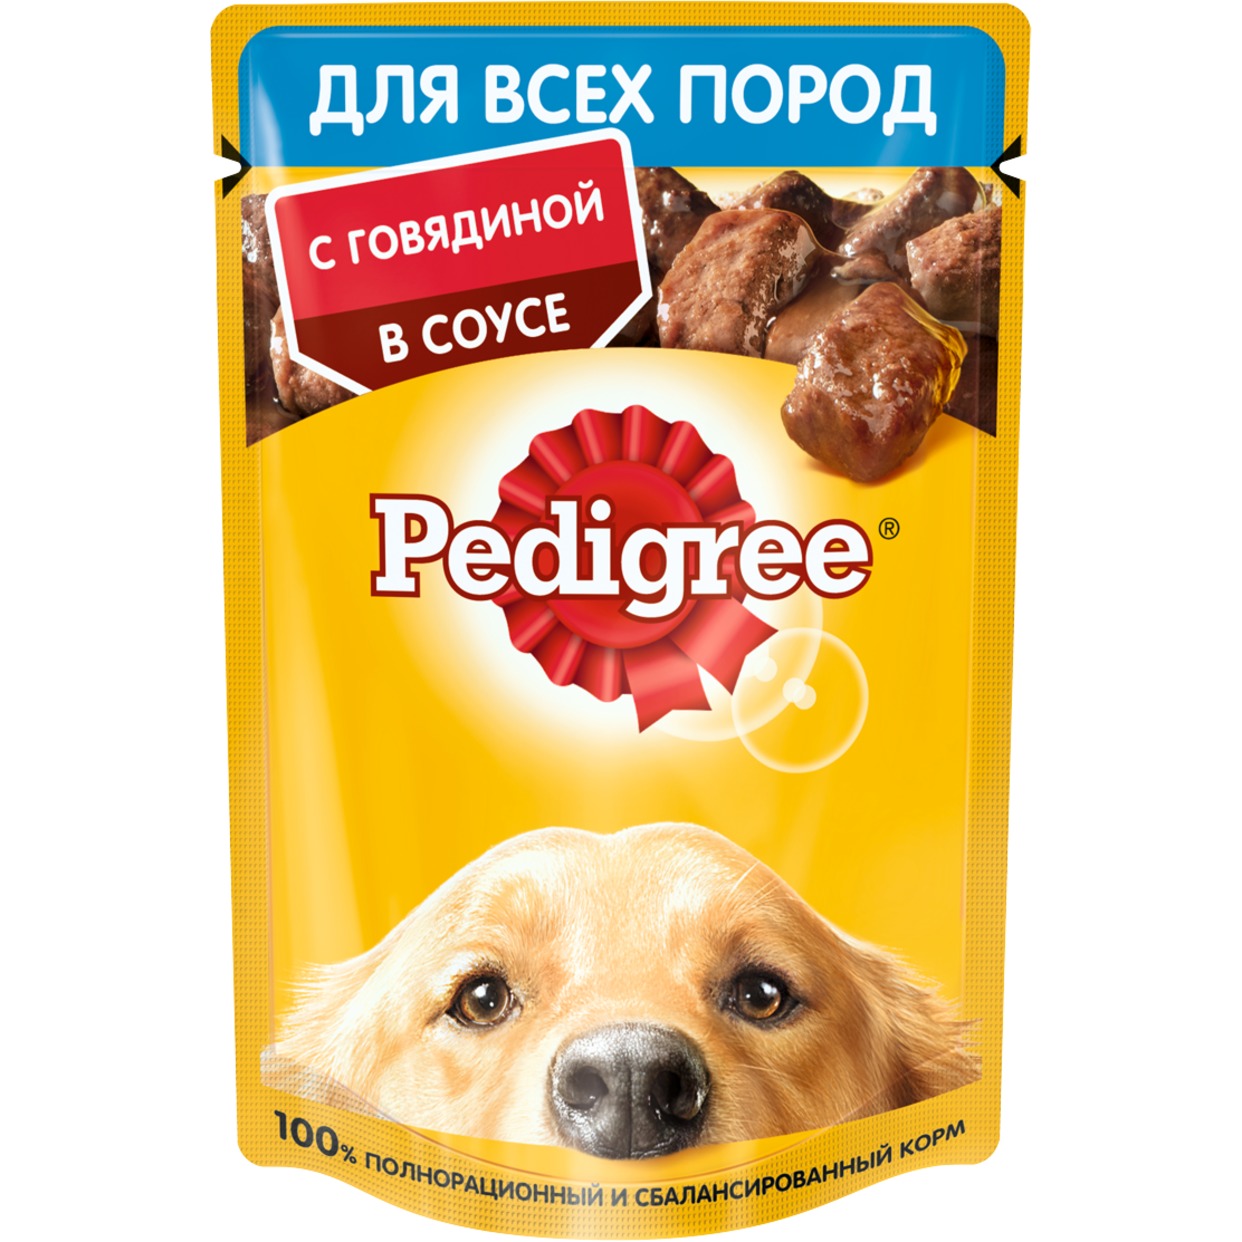 Корм консервированный полнорационный Pedigree для взрослых собак всех пород с говядиной в соусе, 85г по акции в Пятерочке